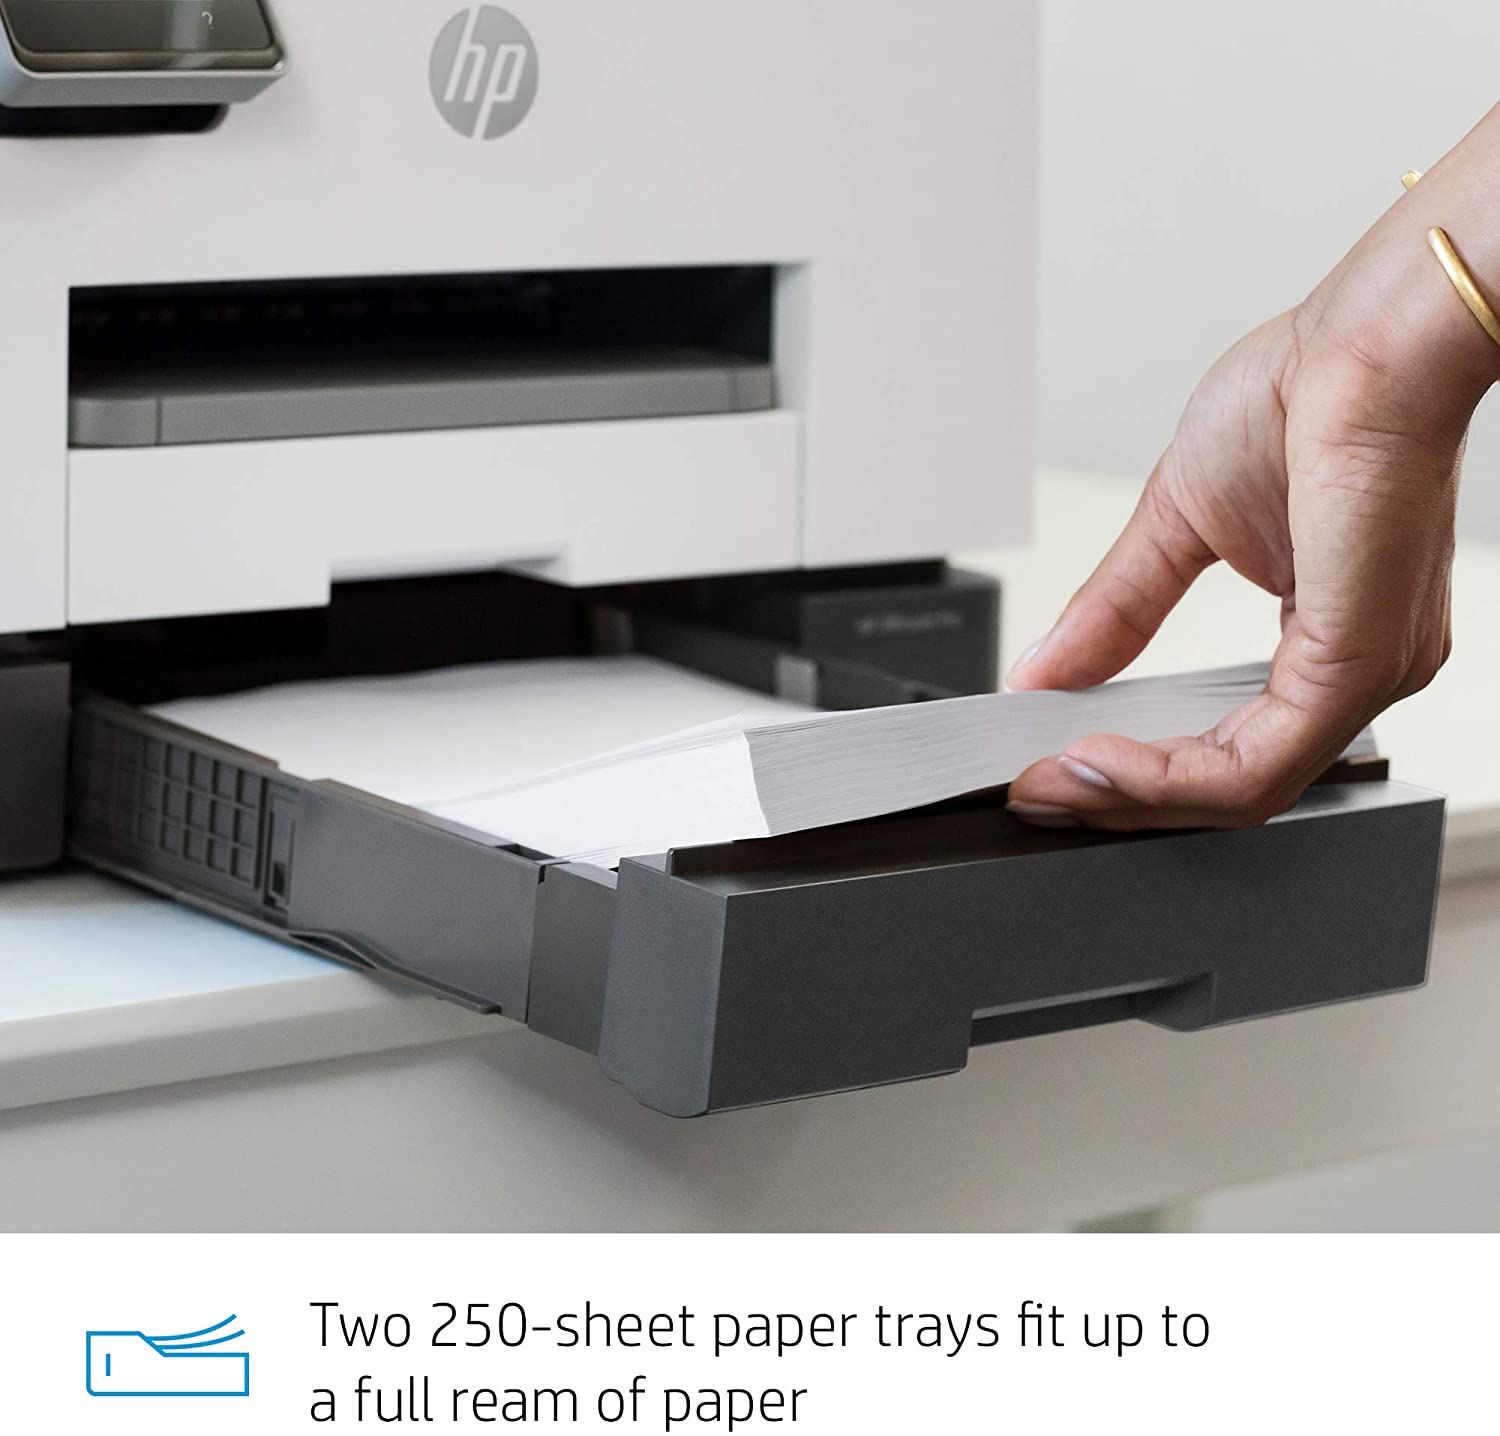 Impresora HP Multifunción  OfficeJet Pro 9020 imprime, copia, escanea a doble cara de una sola pasada, fax  Adf automatico a doble cara Wifi color 22 ppm negro y 18 ppm color